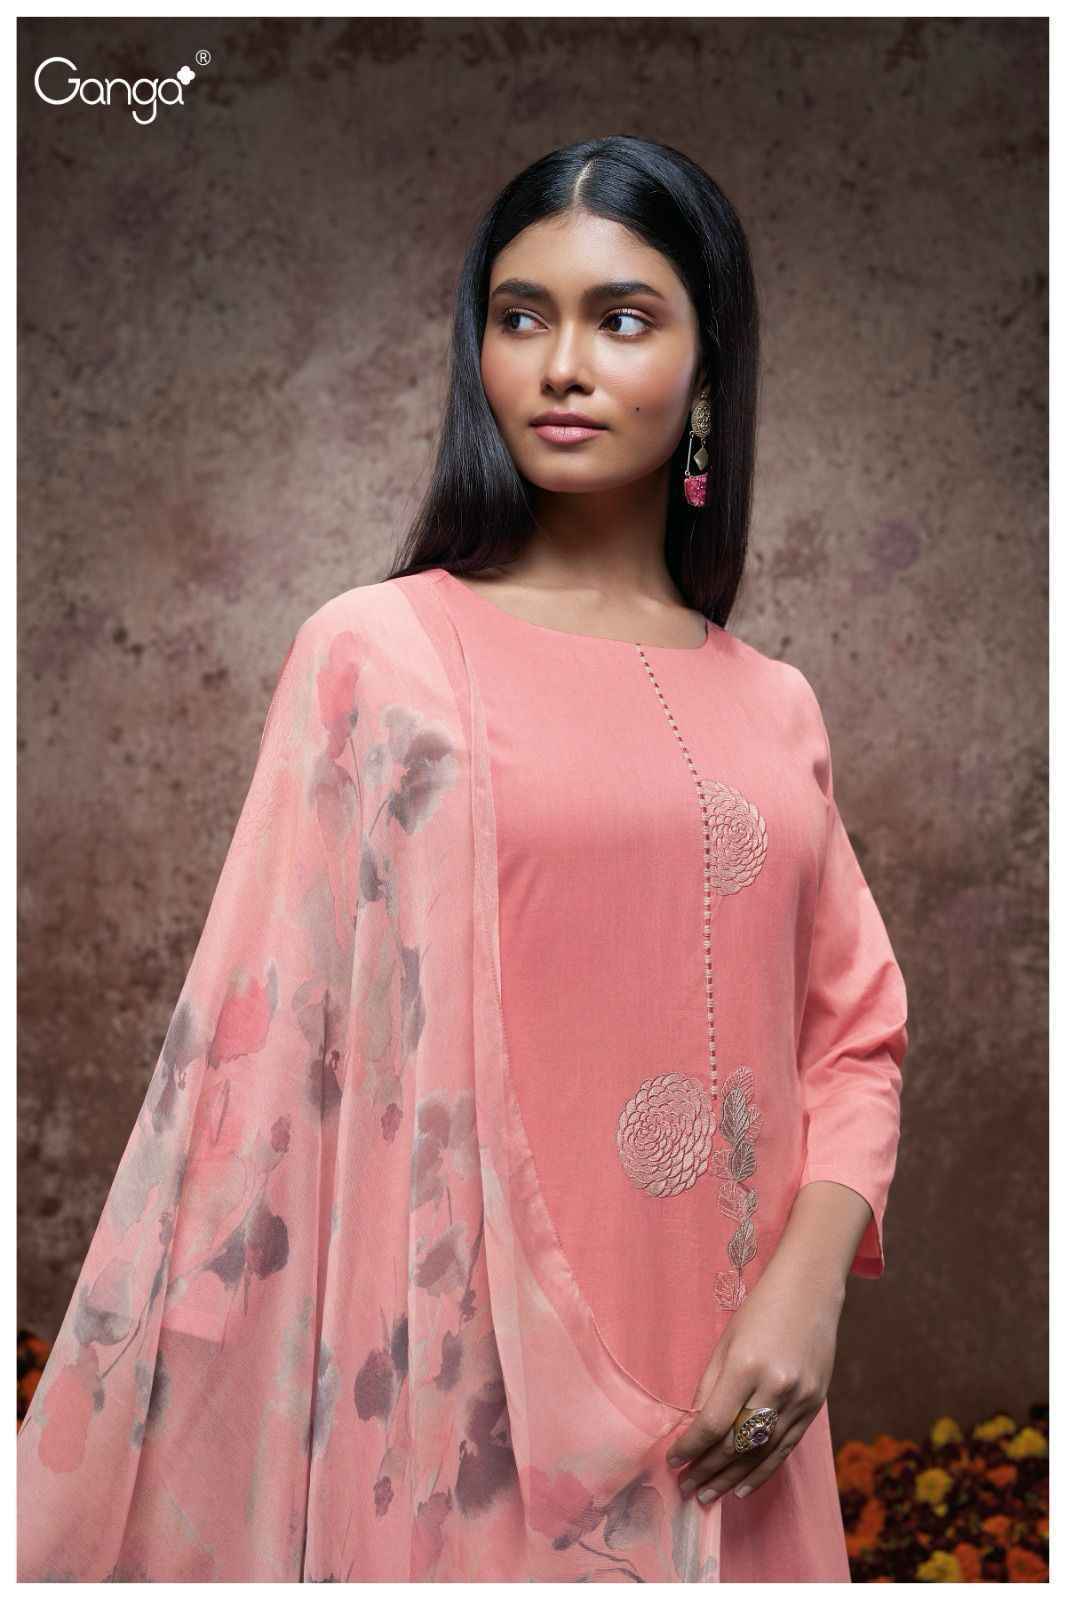 Ganga Valerie Premium Cotton Dress Material 4 Pc Catalog